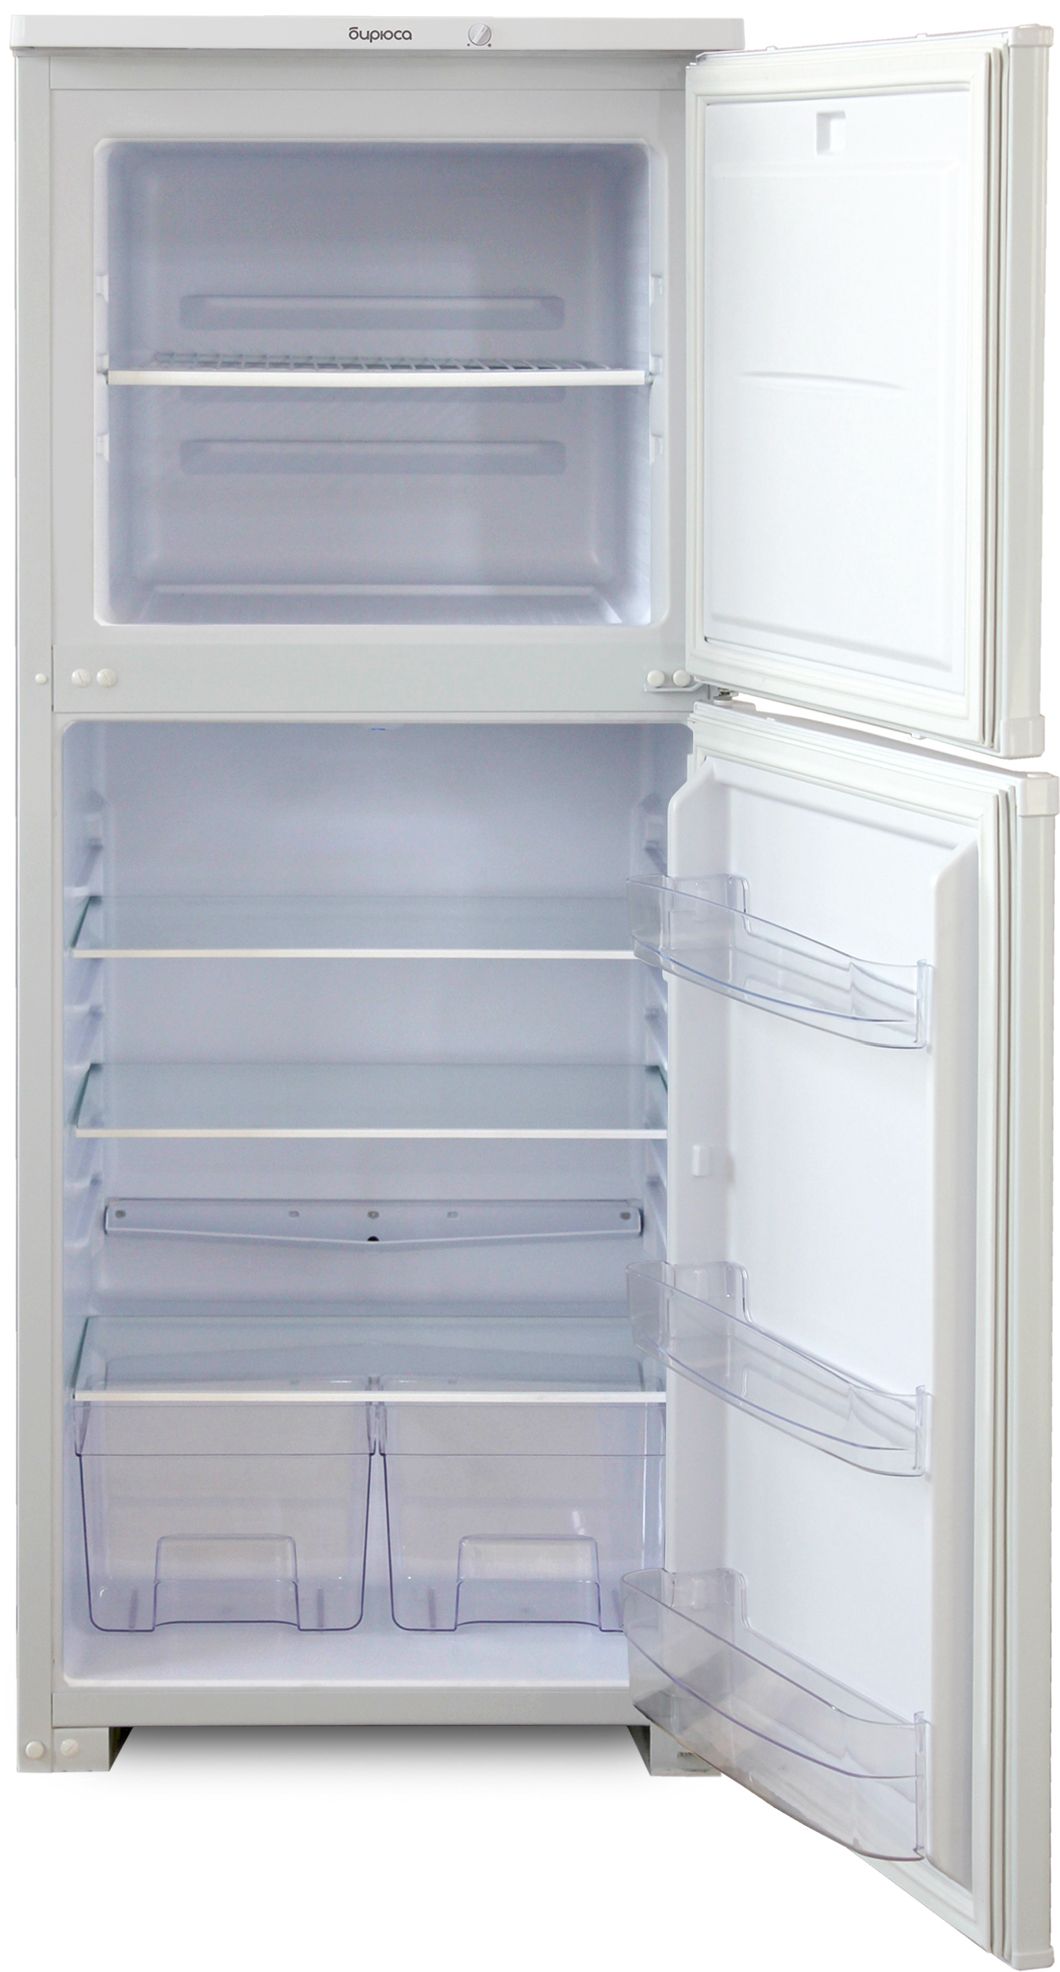 холодильник бирюса 153, купить в Красноярске холодильник бирюса 153,  купить в Красноярске дешево холодильник бирюса 153, купить в Красноярске минимальной цене холодильник бирюса 153